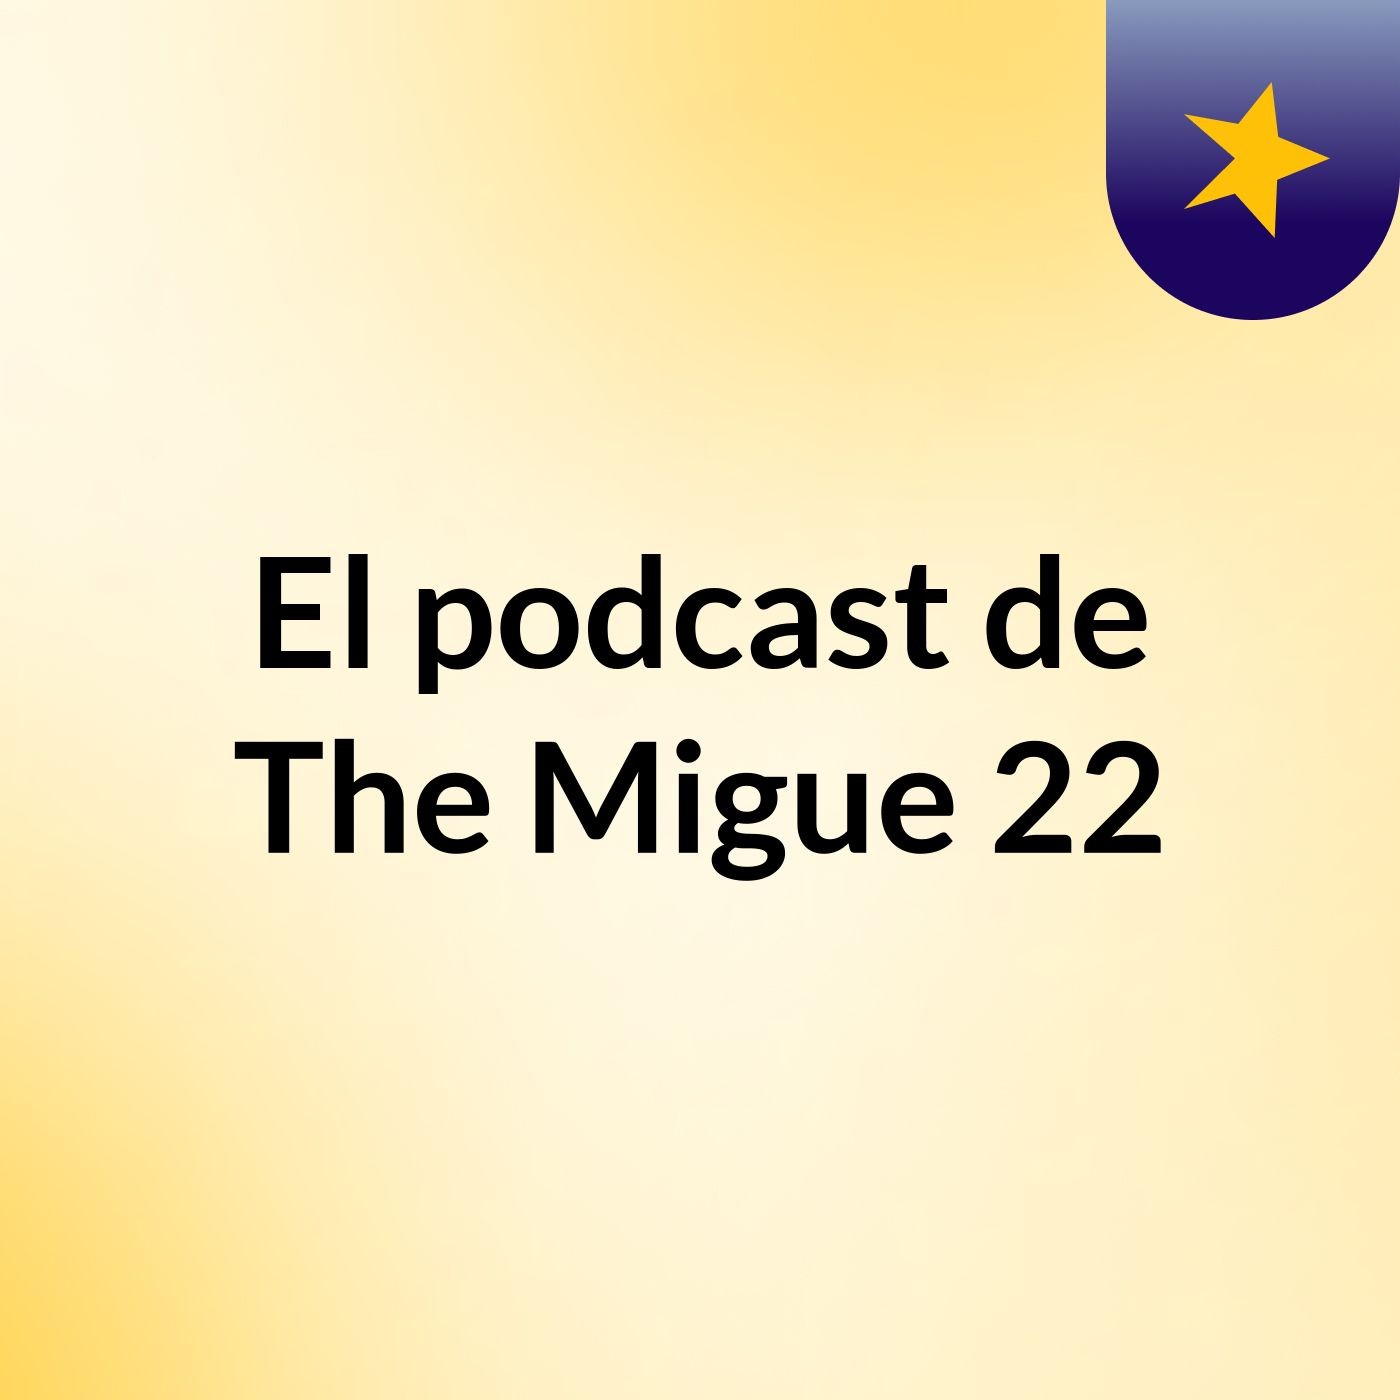 El podcast de The Migue 22